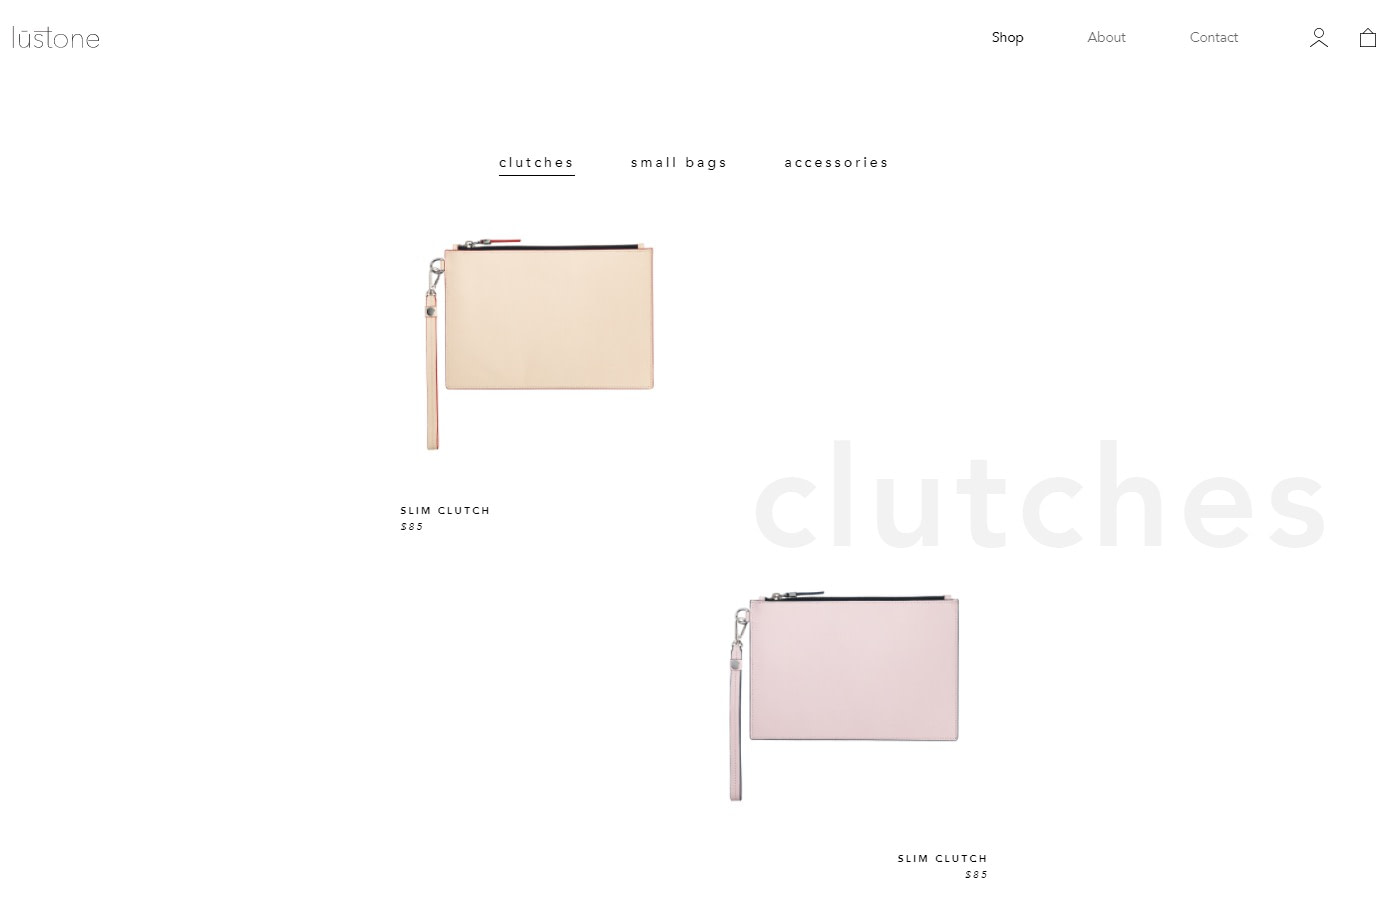 Lustone uses minimalist design to appear more elegant